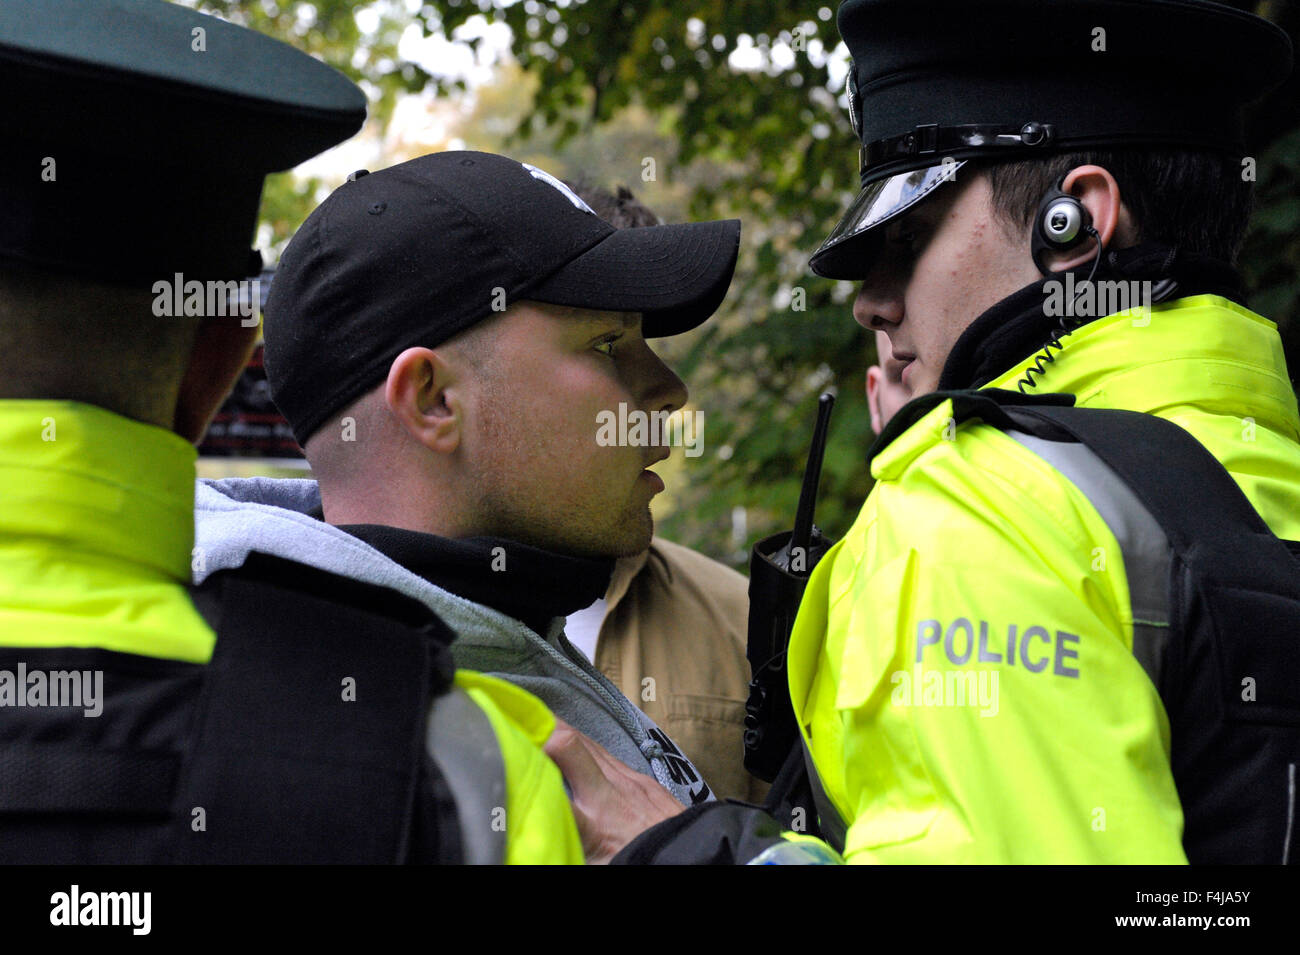 Le groupe républicain dissident Réseau républicain de l'unité (RNU) protester contre un service de police de l'Irlande du Nord (PSNI) cas Banque D'Images